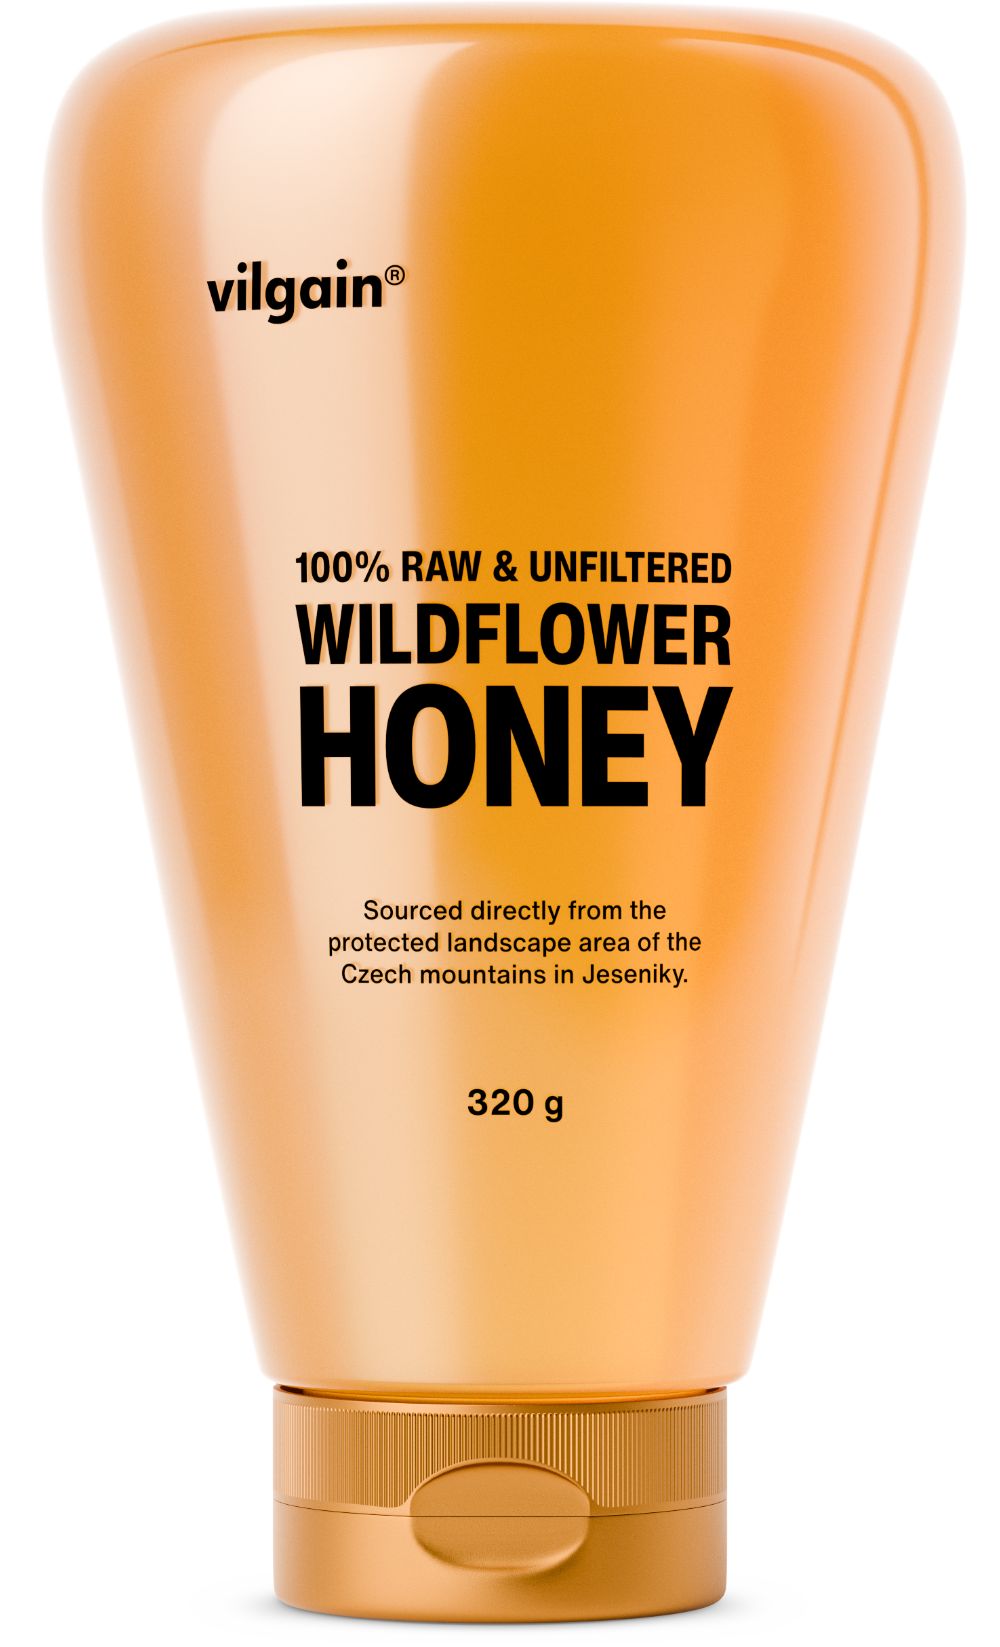 Vilgain Wildflower Honey